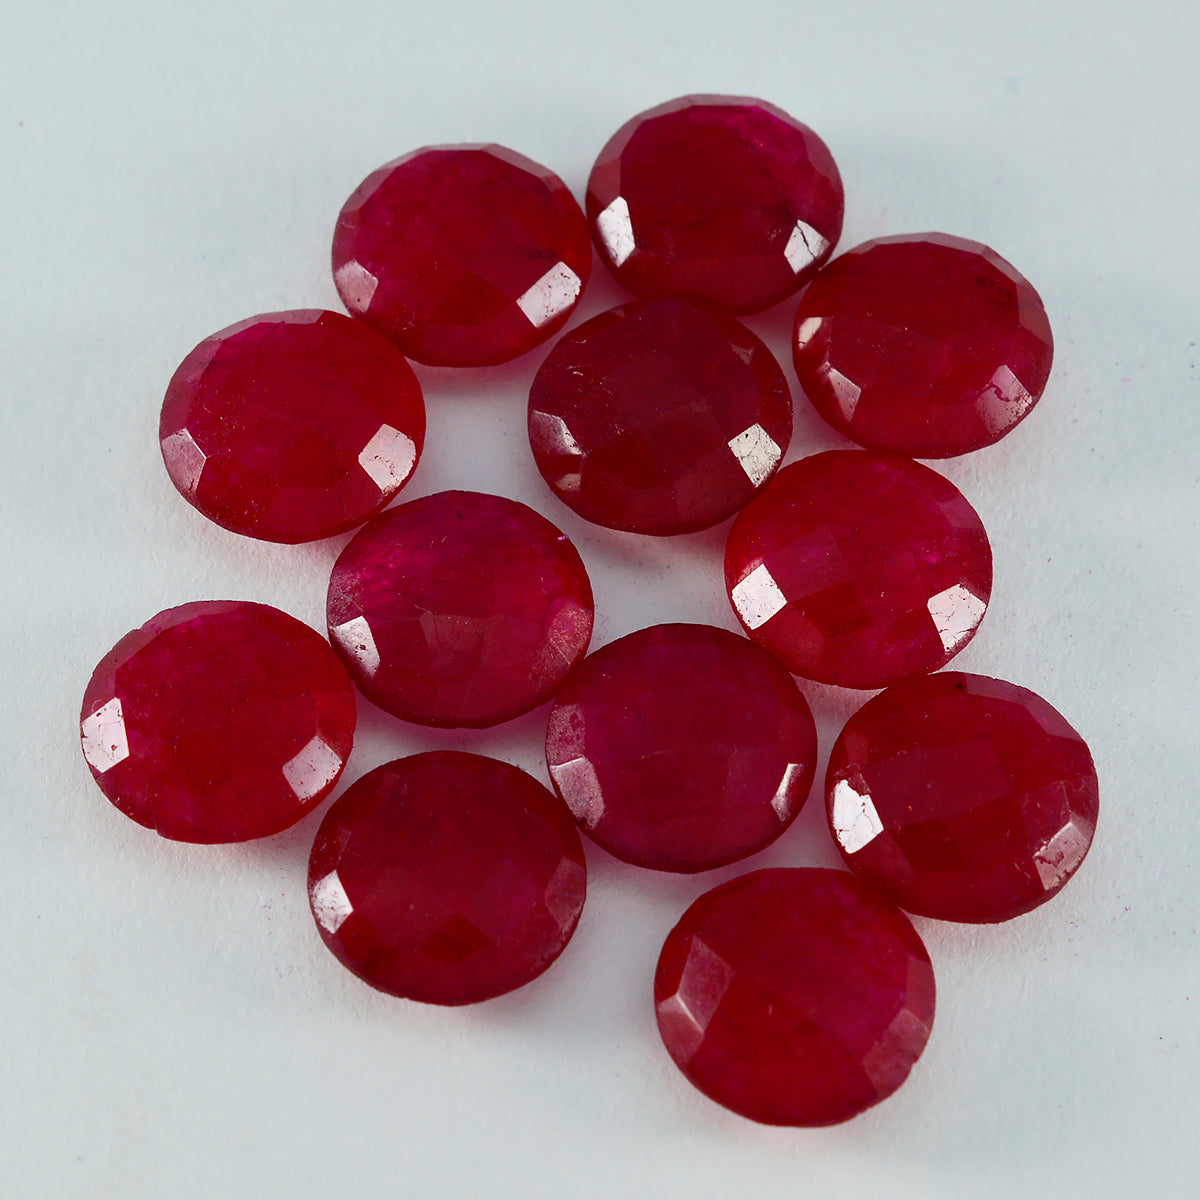 Riyogems 1 pieza jaspe rojo auténtico facetado 12x12mm forma redonda gema de calidad AAA